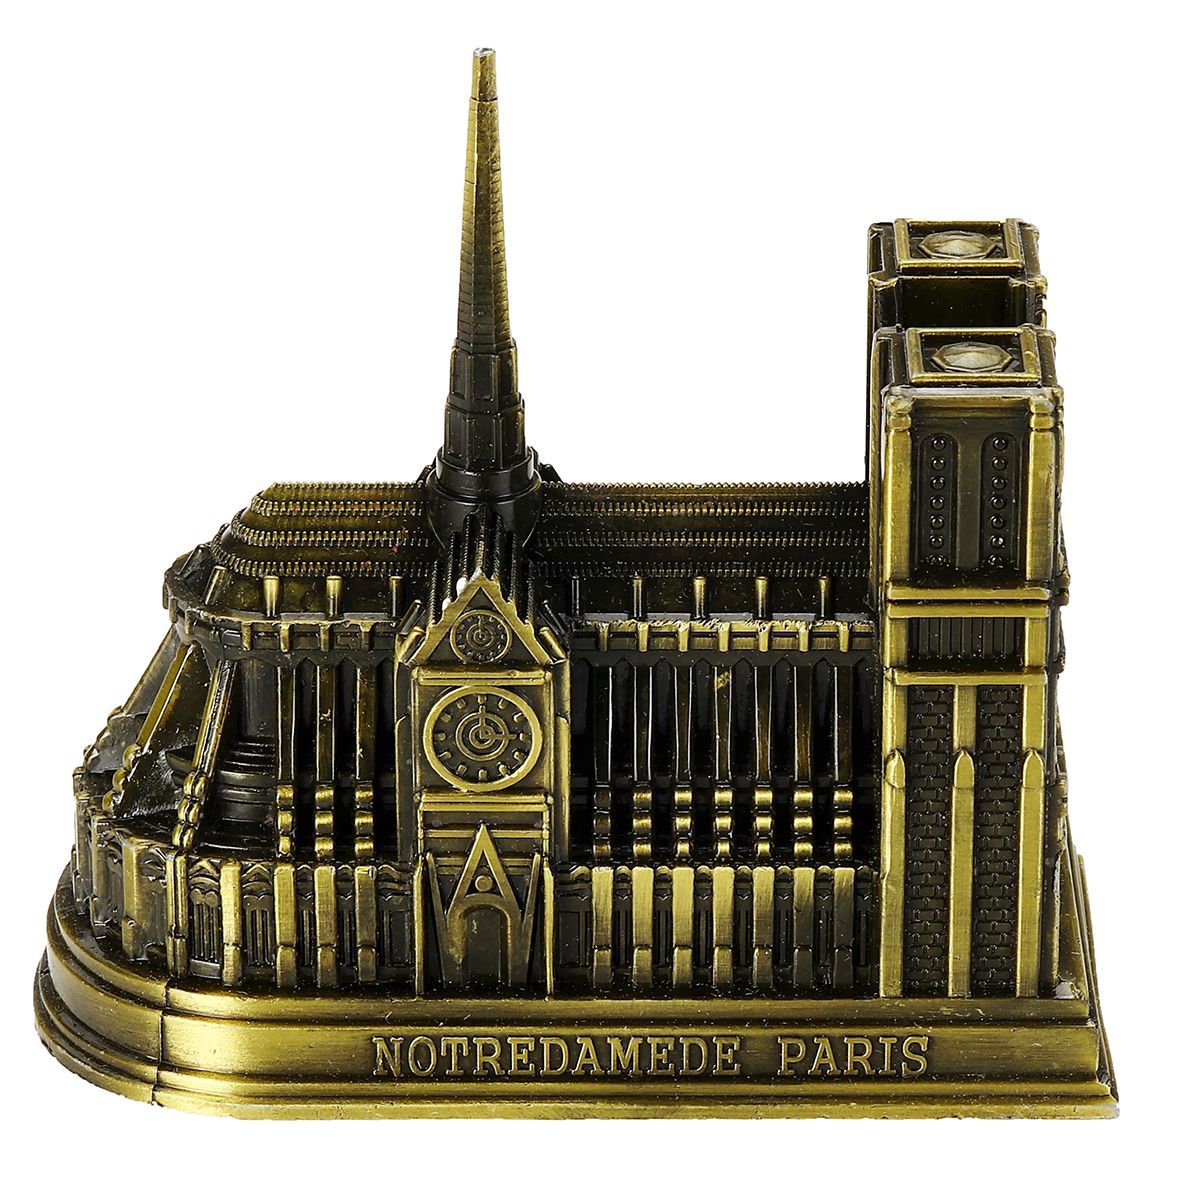 3D-DIY-Metal-Puzzle-Notre-Dame-de-Paris-Build-Model-Home-Desktop-Landscape-Decorations-Crafts-1575225